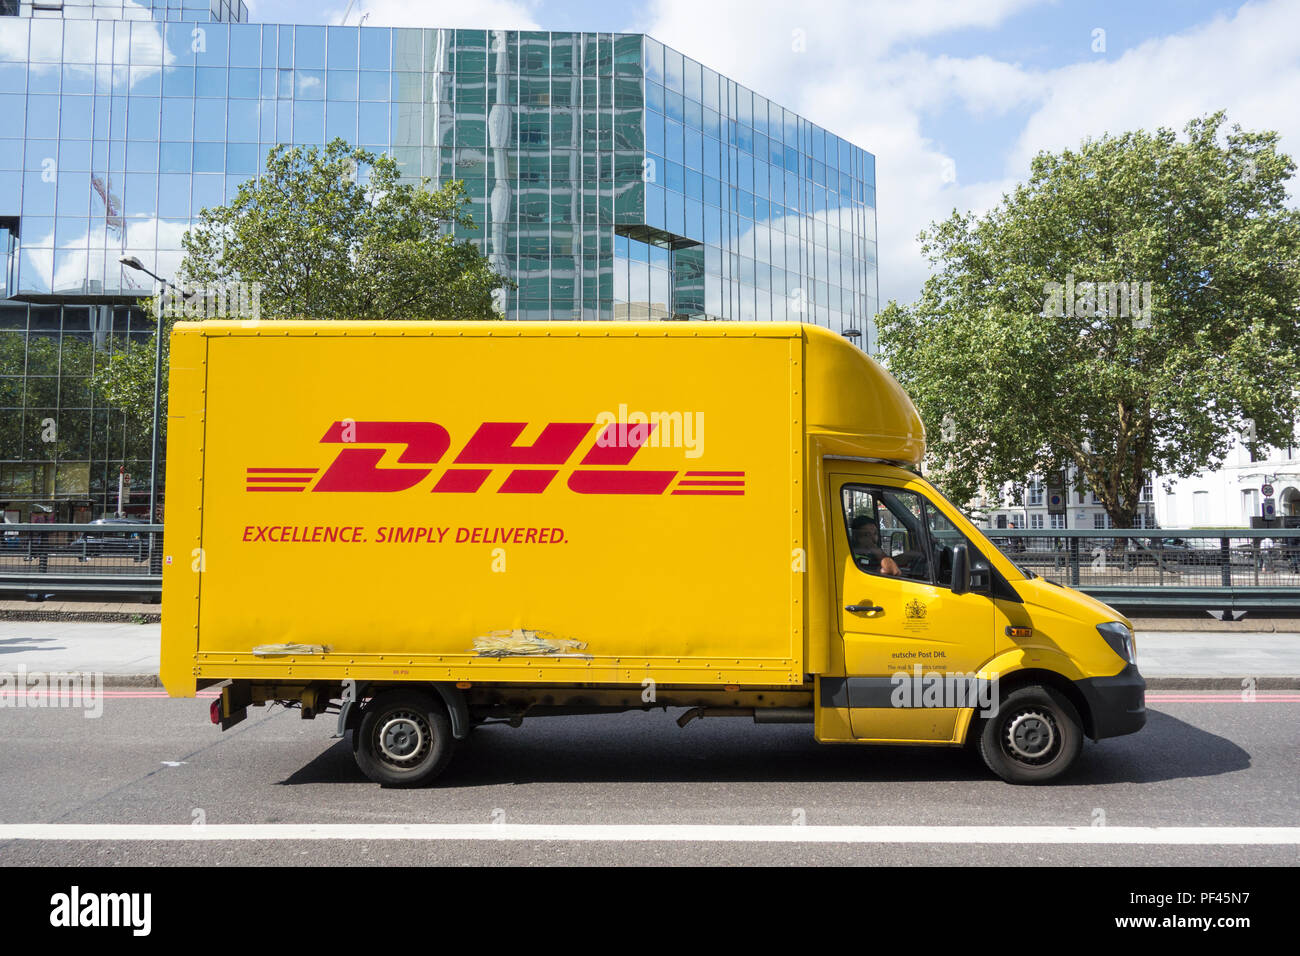 DHL - Excellence, simplement livrés, la livraison van sur le centre de Londres, UK Banque D'Images